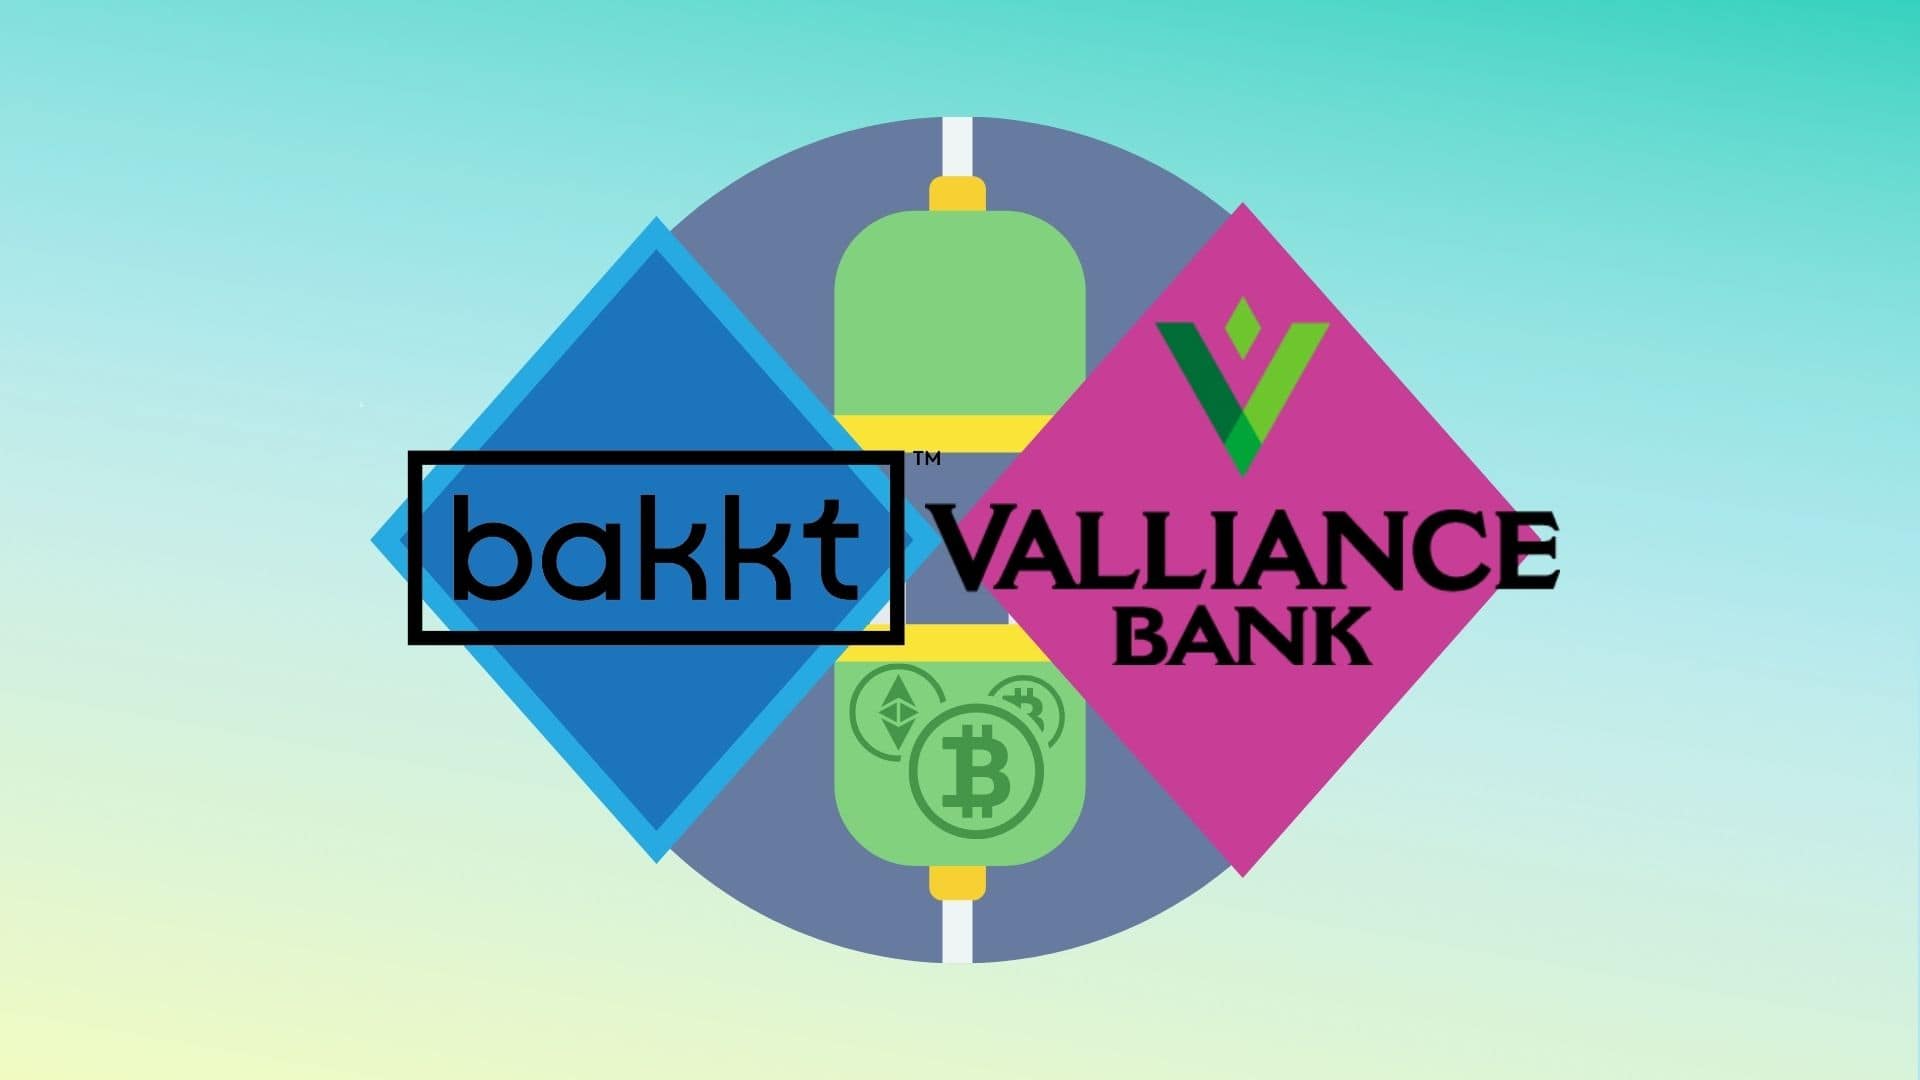 Для доступа к Криптовалюте Американские банки объединились (Valliance Bank и Bakkt) , они предоставят общую услугу всем пользователям